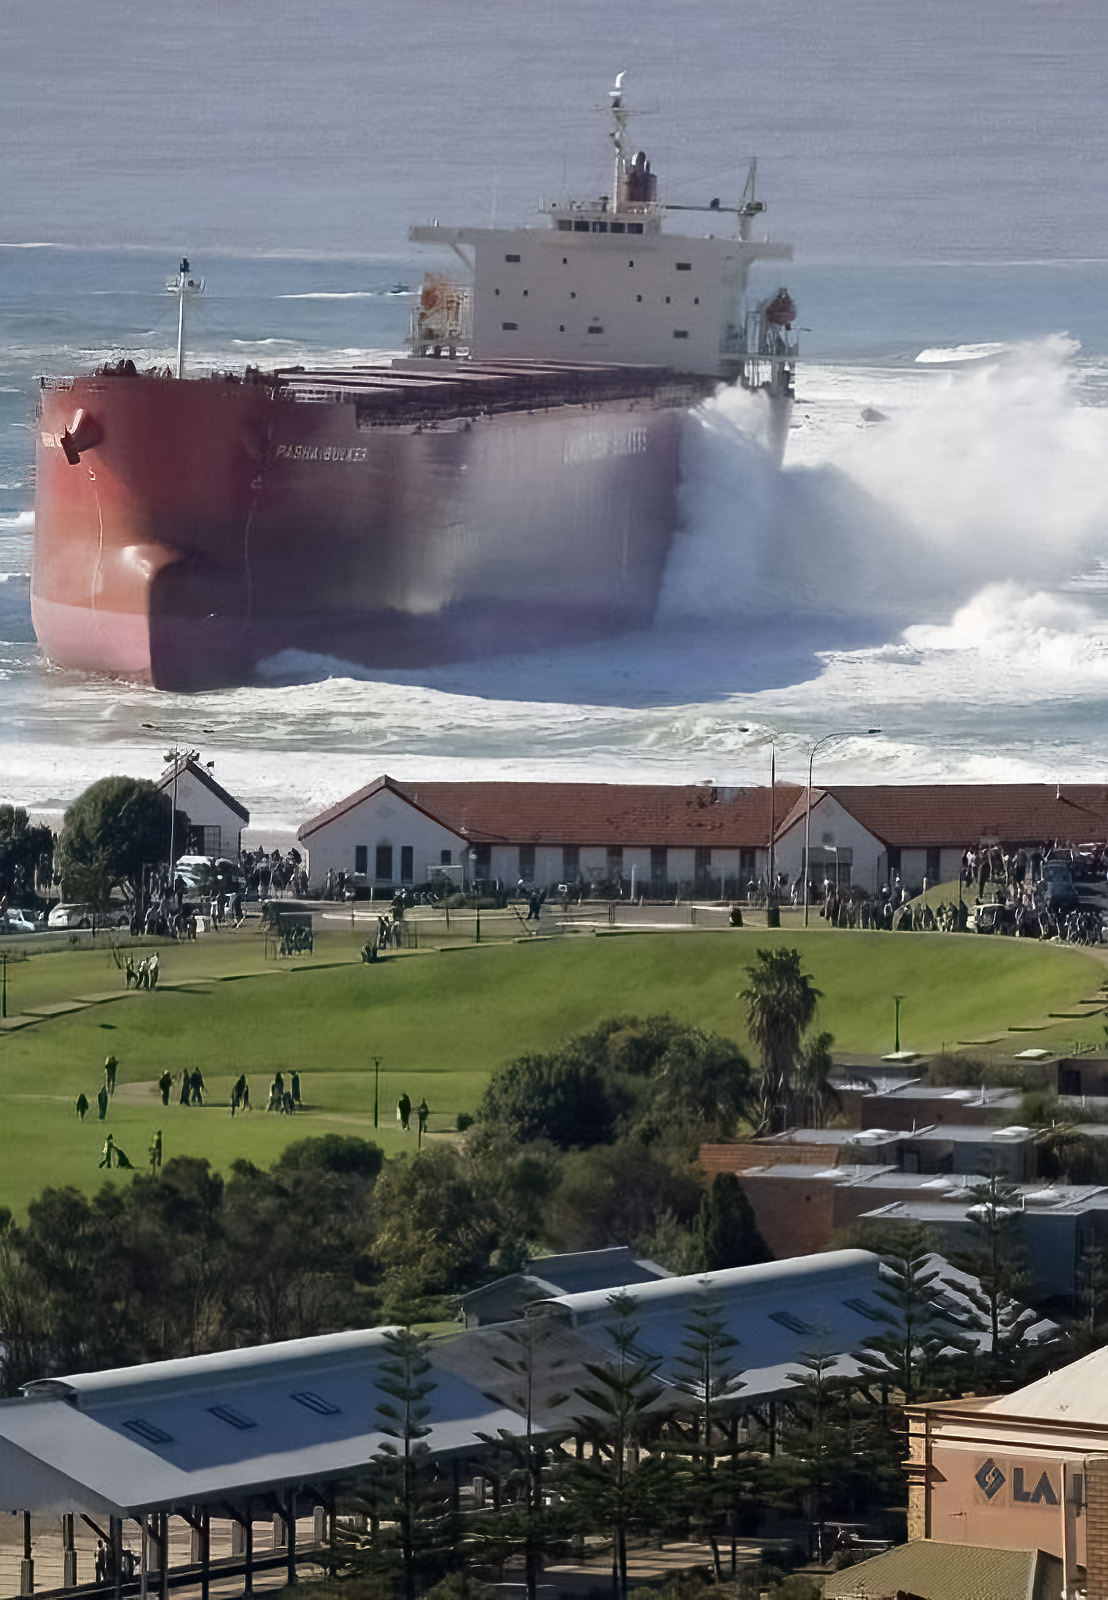 Das Schiff wirkt riesig vor der kleinen Siedlung. Perspektivische Bildwirkung extrem – per KI-Filter, Foto-Experiment und Social-Media-Posts und „Fußzoom“